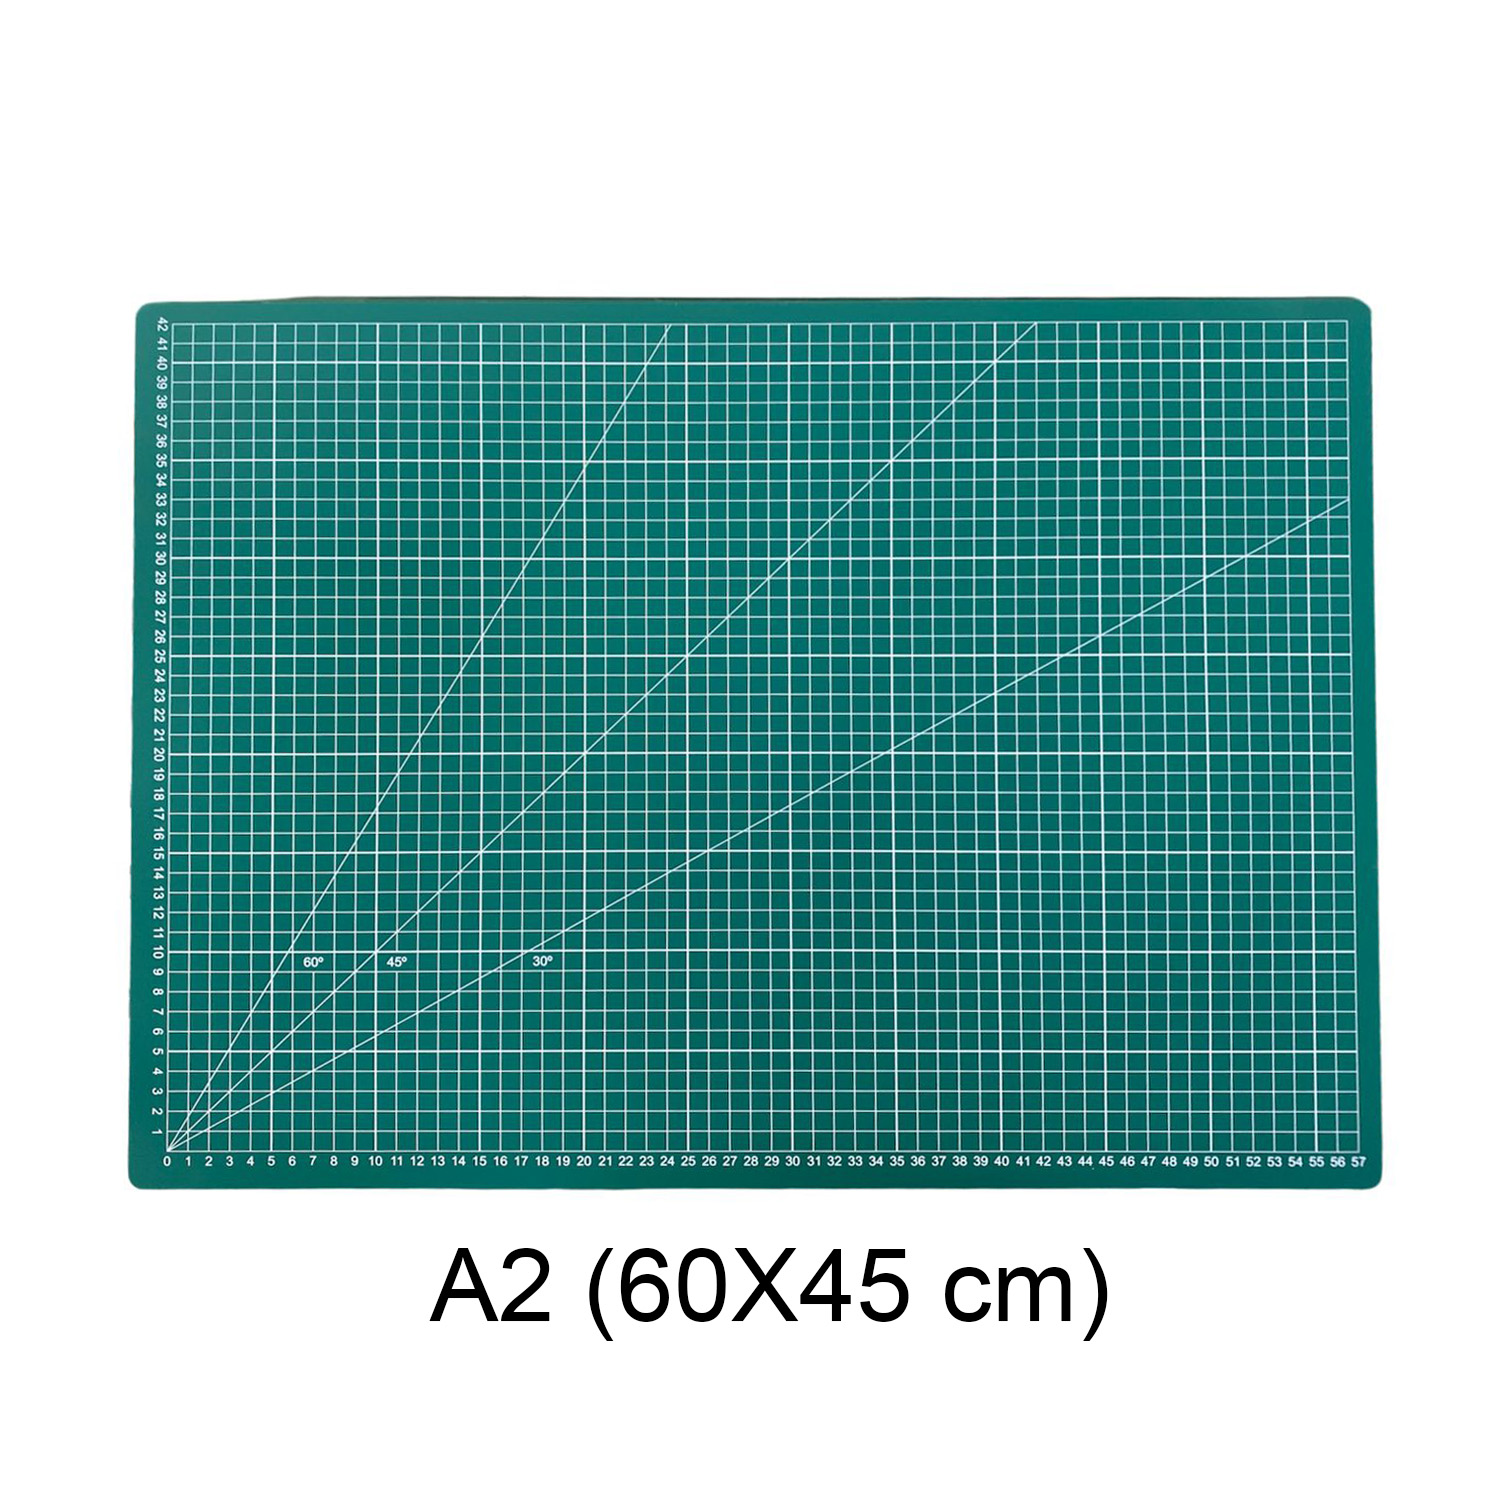 Base de Corte 60x45cm (A2) Cuadriculada y con Ángulos